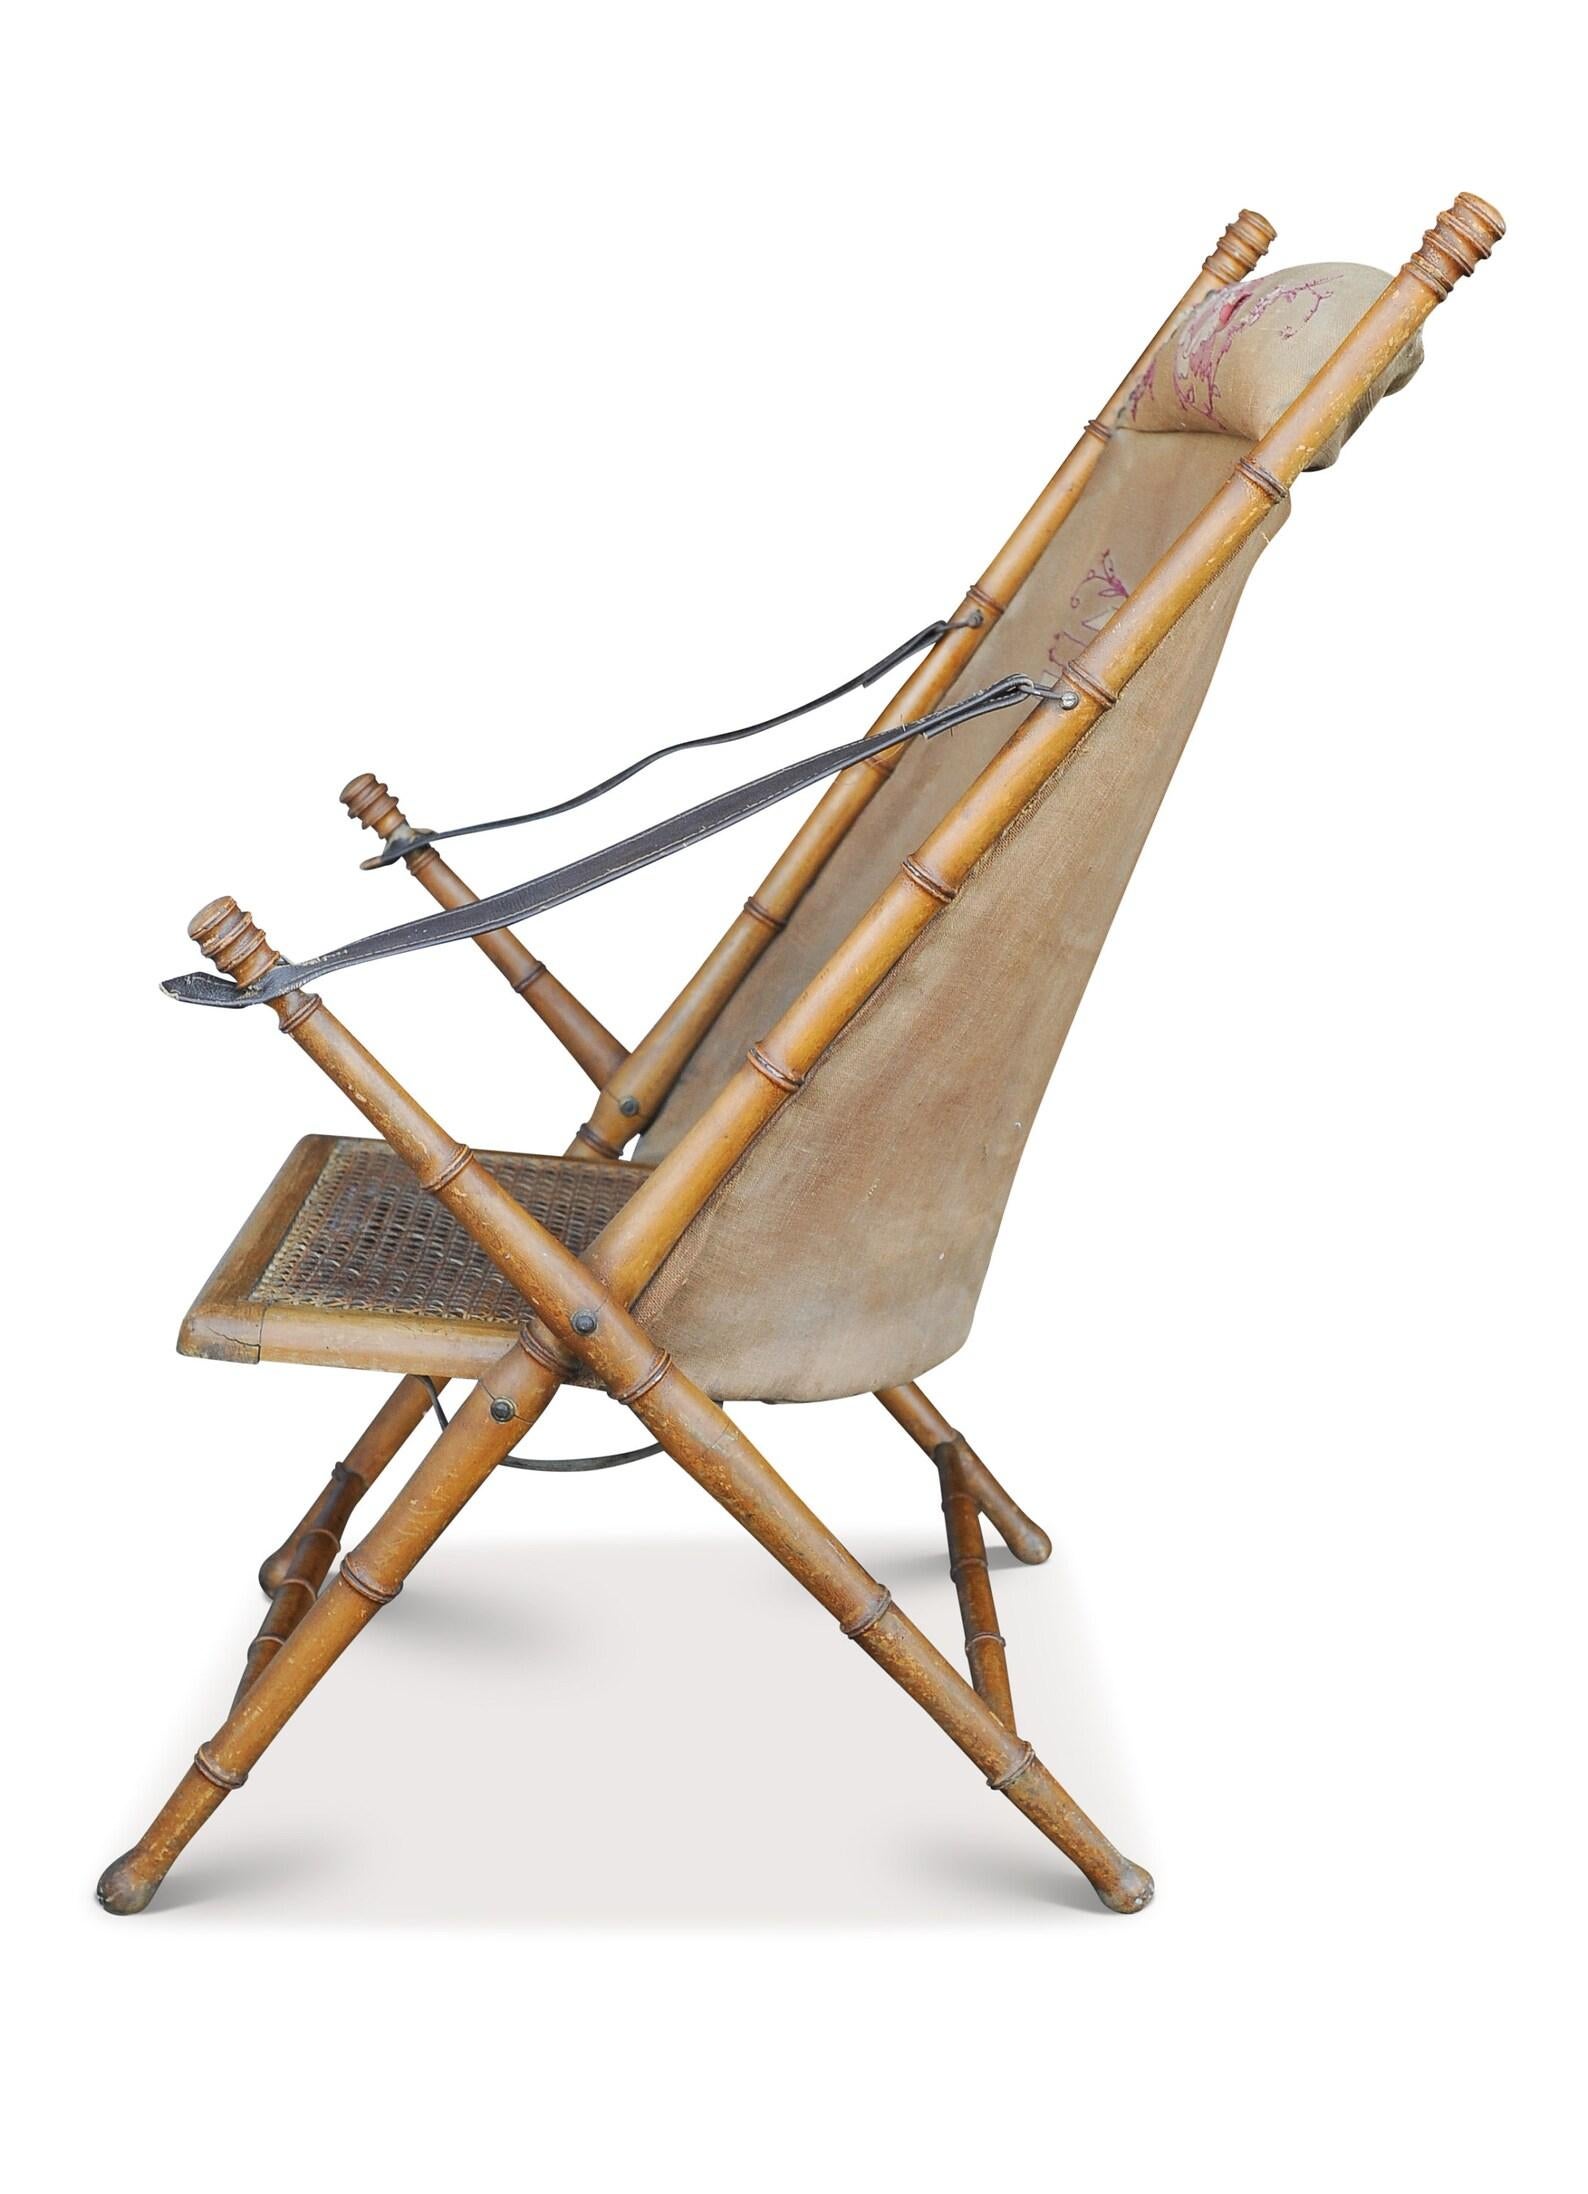 Ein feines Stück viktorianischer Militärkampagne. Ein Klappstuhl aus Bambusimitat, mit einer bestickten Sitzfläche aus Segeltuch auf der Rückseite, mit Armlehnen aus braunem Leder und einem gedrechselten Buchenholzrahmen 

Zusätzliche Abmessungen